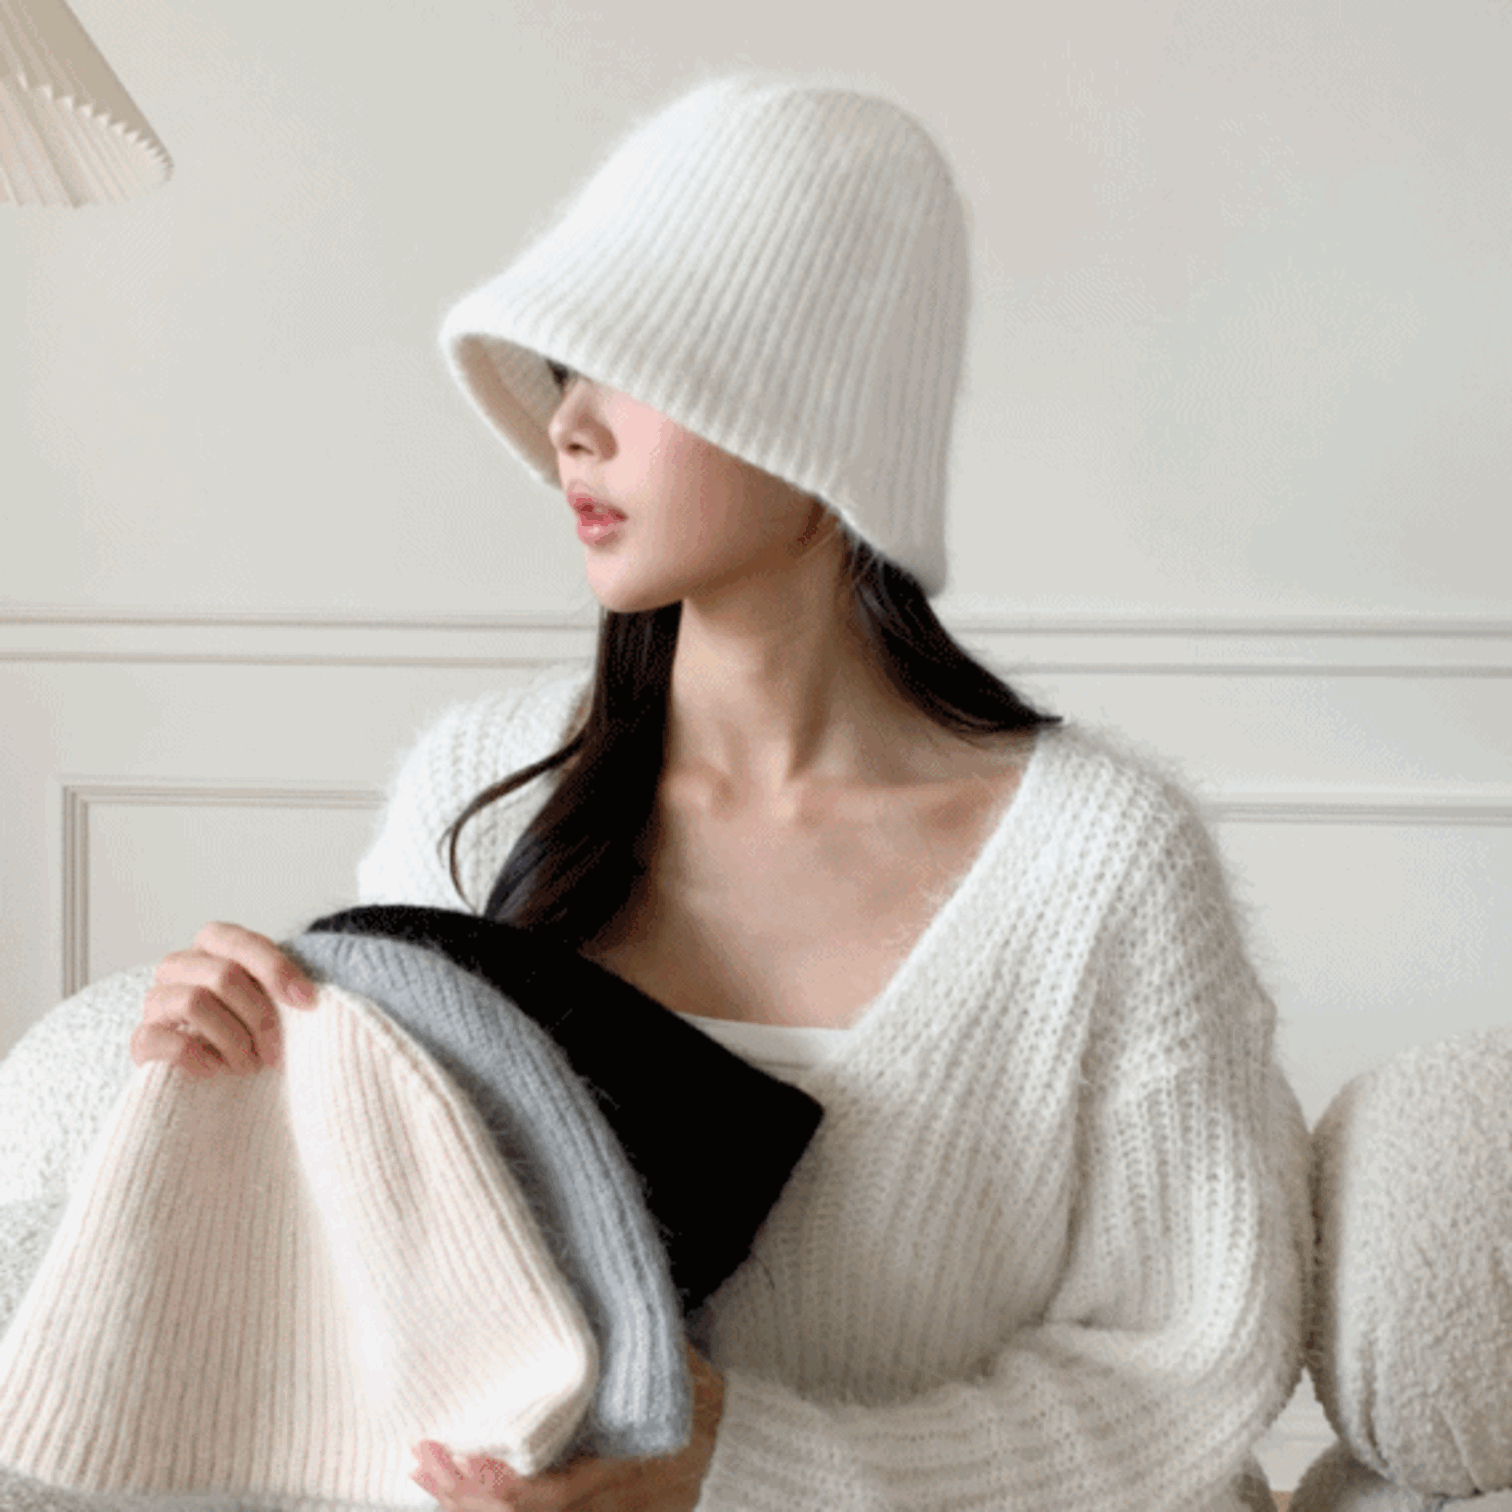 [앙고라] 베르 도톰 소프트 베이직 겨울 니트 벙거지 버킷햇 모자 4color